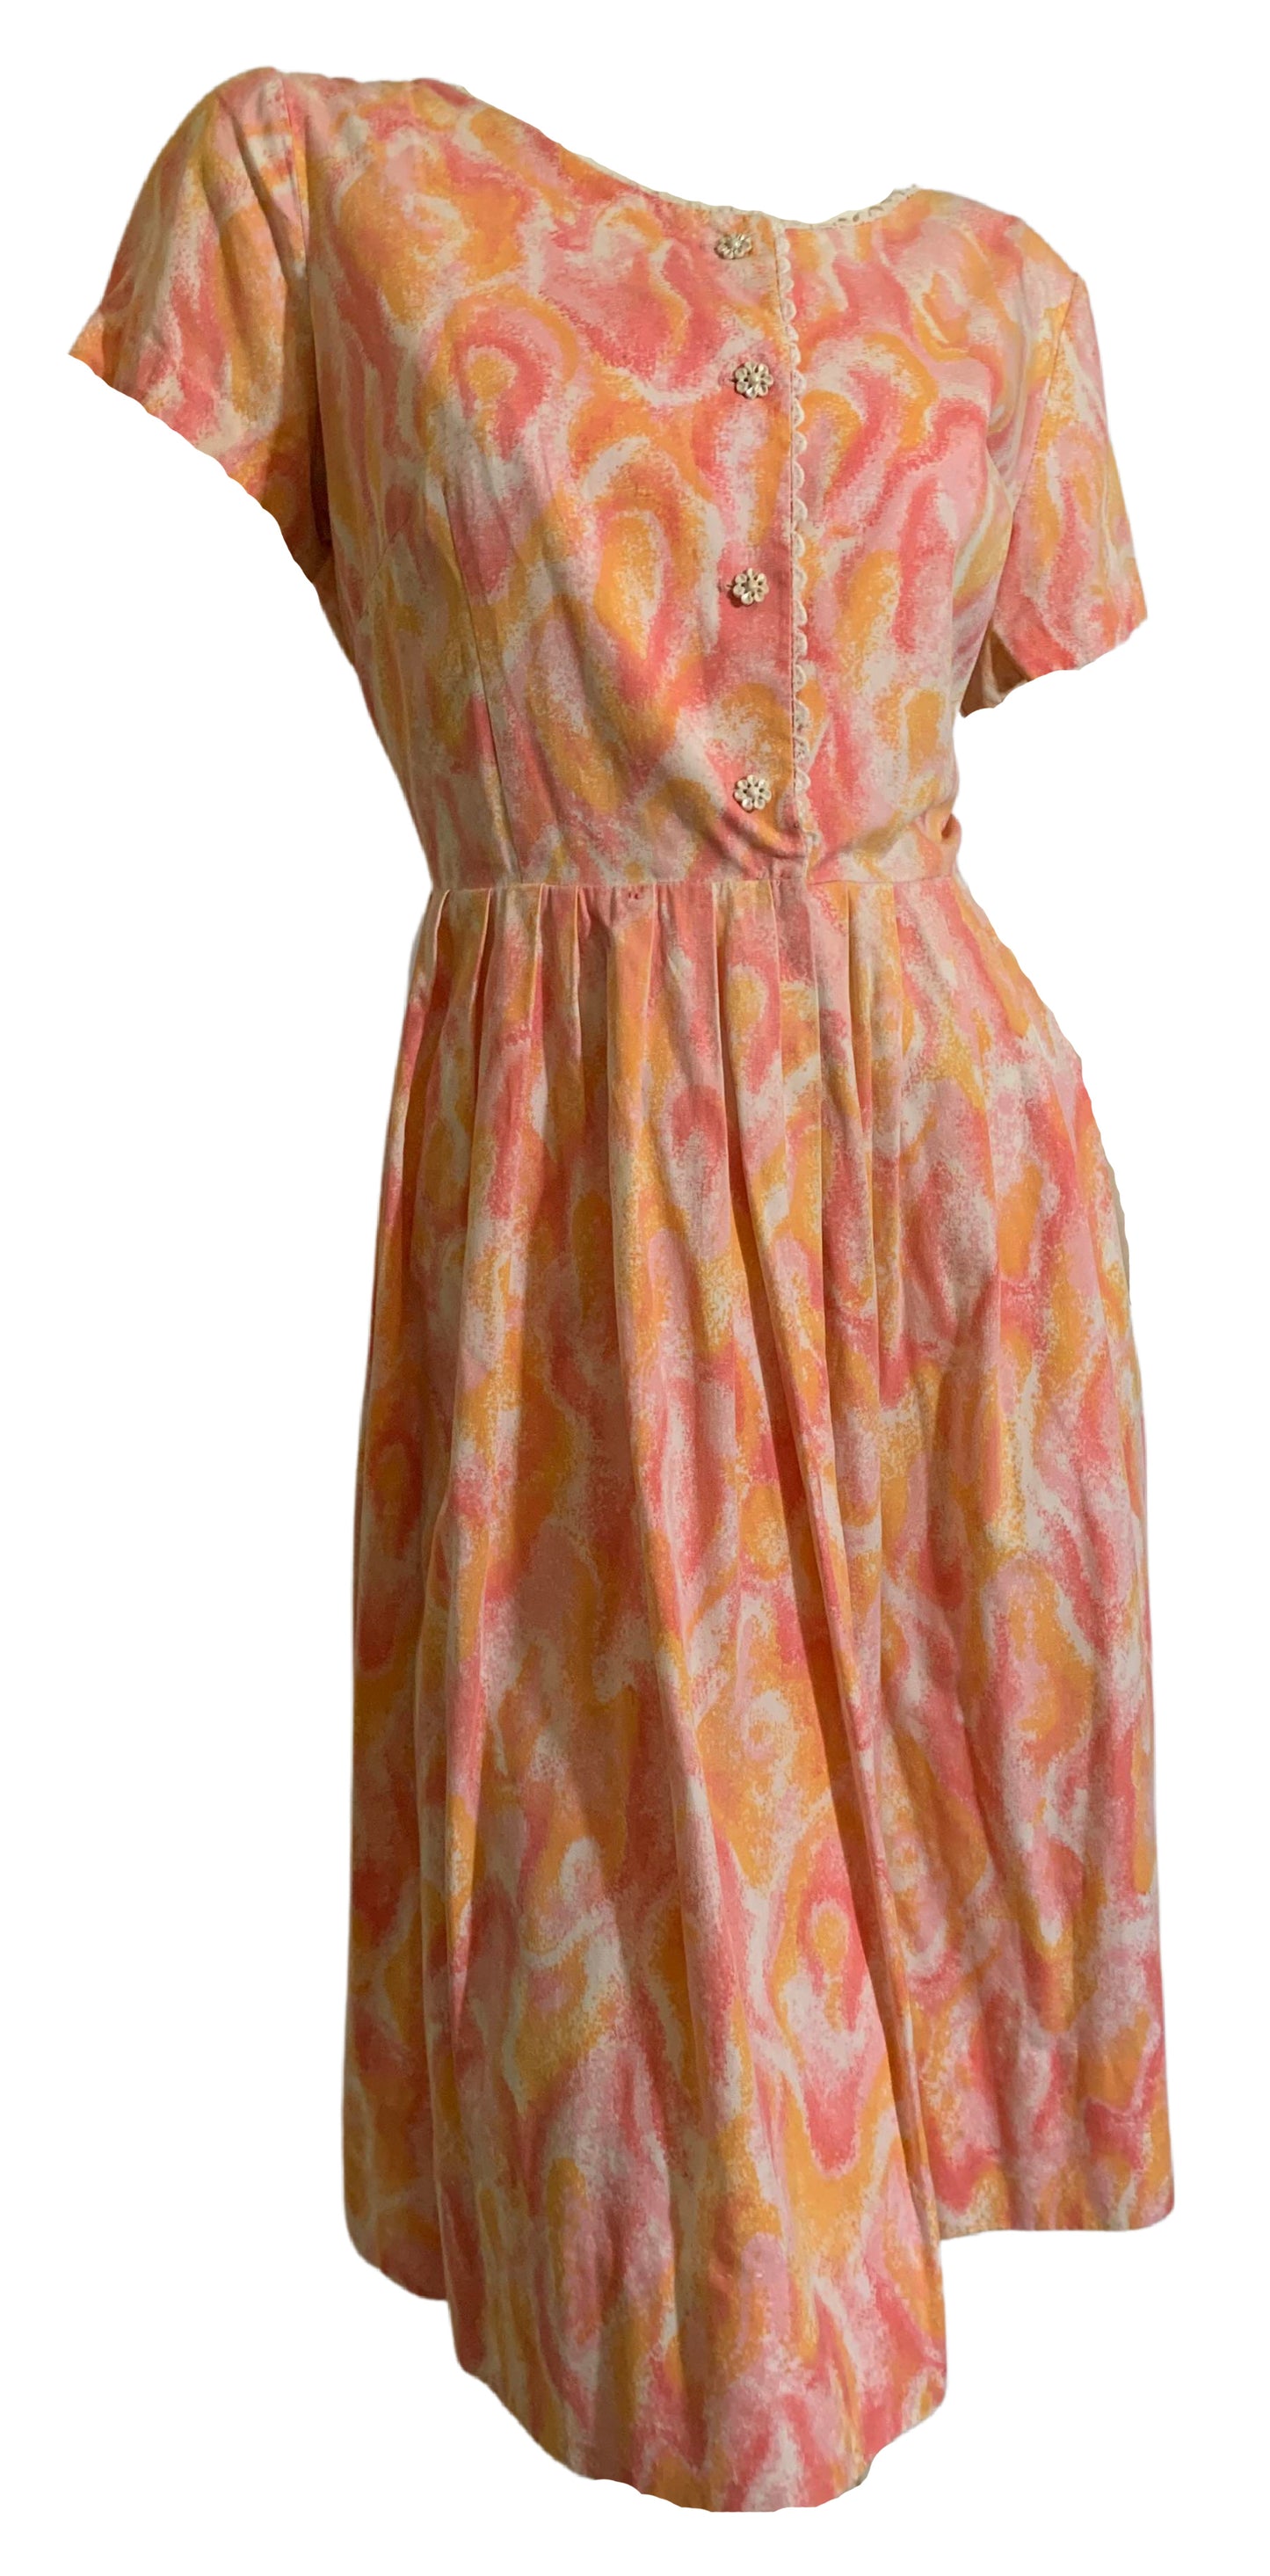 Pretty Peach Abstract Floral Print Cotton Dress circa 1960s